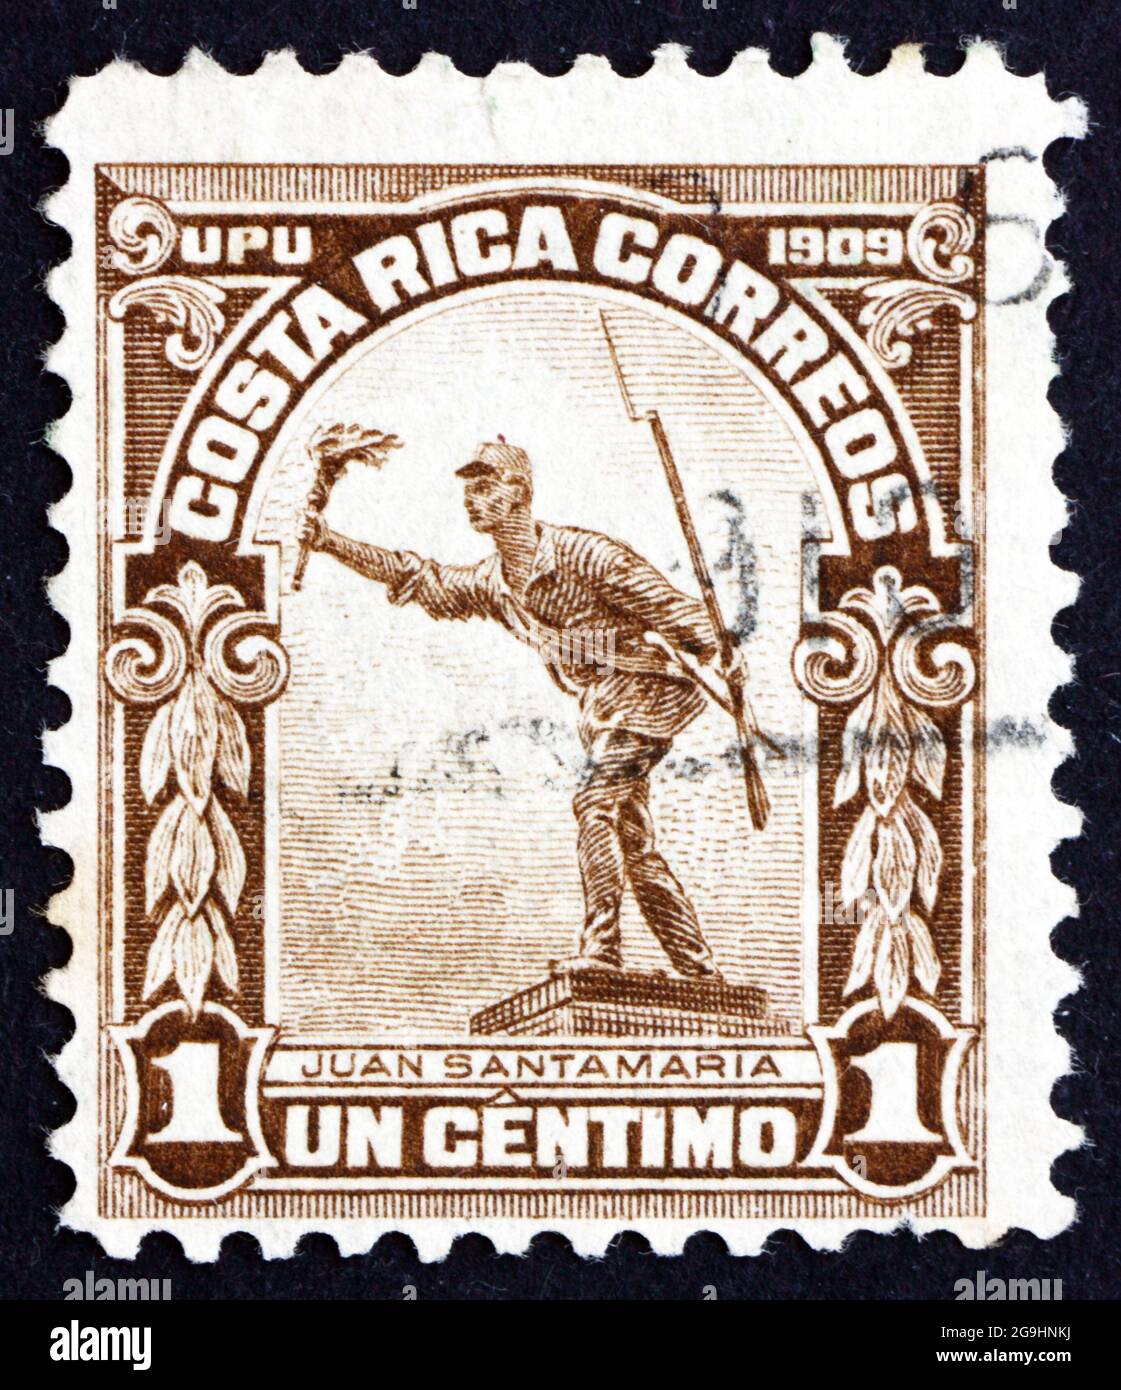 COSTA RICA - UM 1910: Eine in Costa Rica gedruckte Briefmarke zeigt die Statue von Juan Santamaria, Nationalheld der Republik Costa Rica, um 1910 Stockfoto